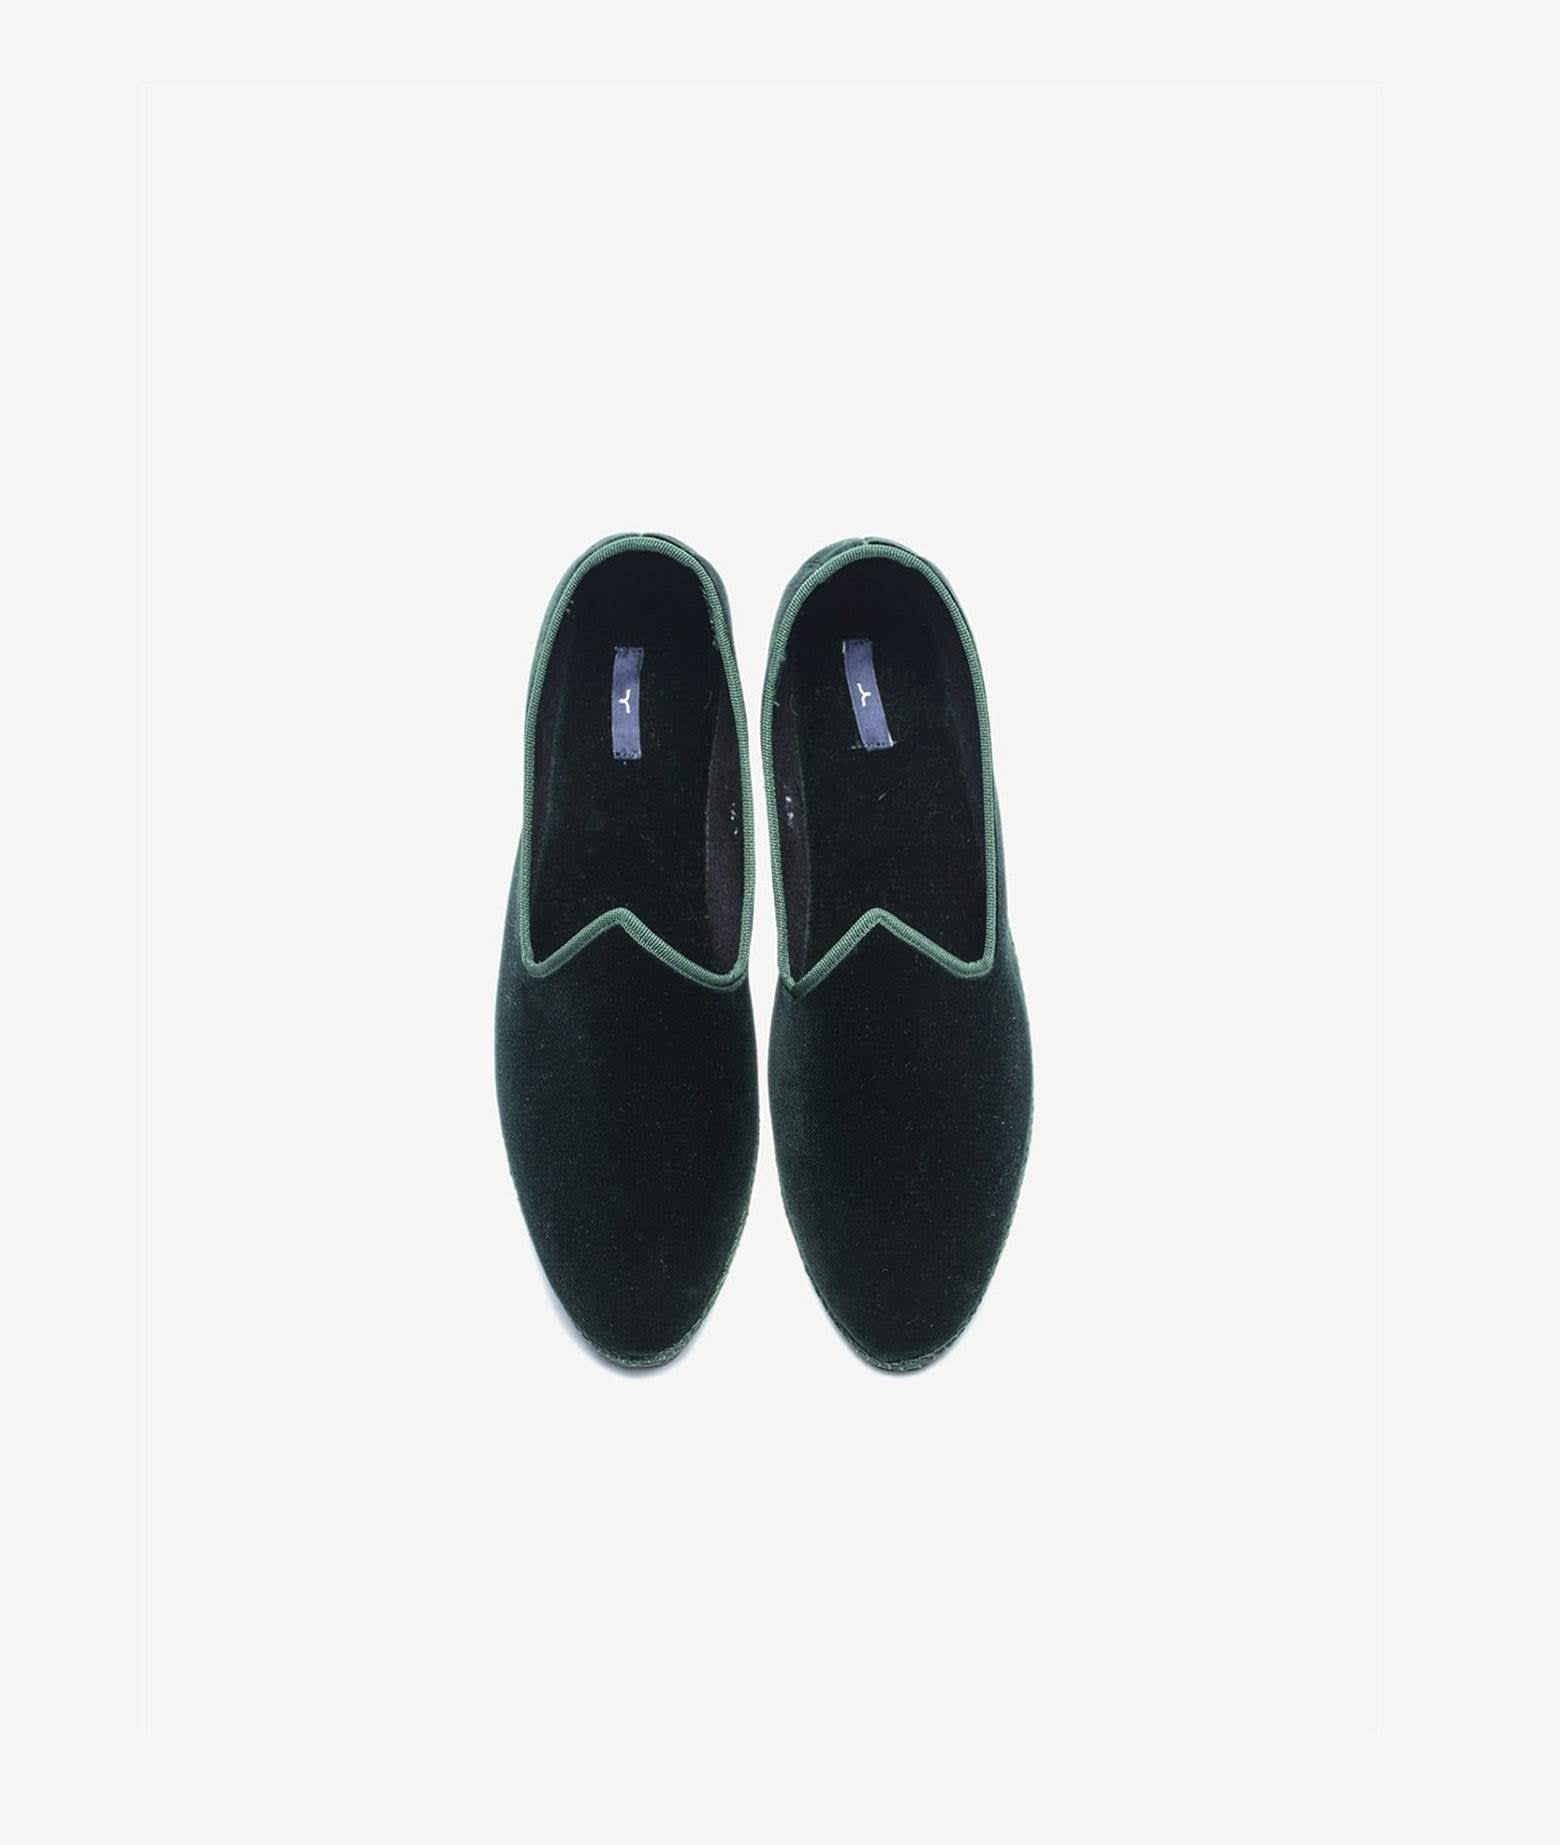 Larusmiani Friulana Ponte Del Cavallo Shoes In Darkgreen